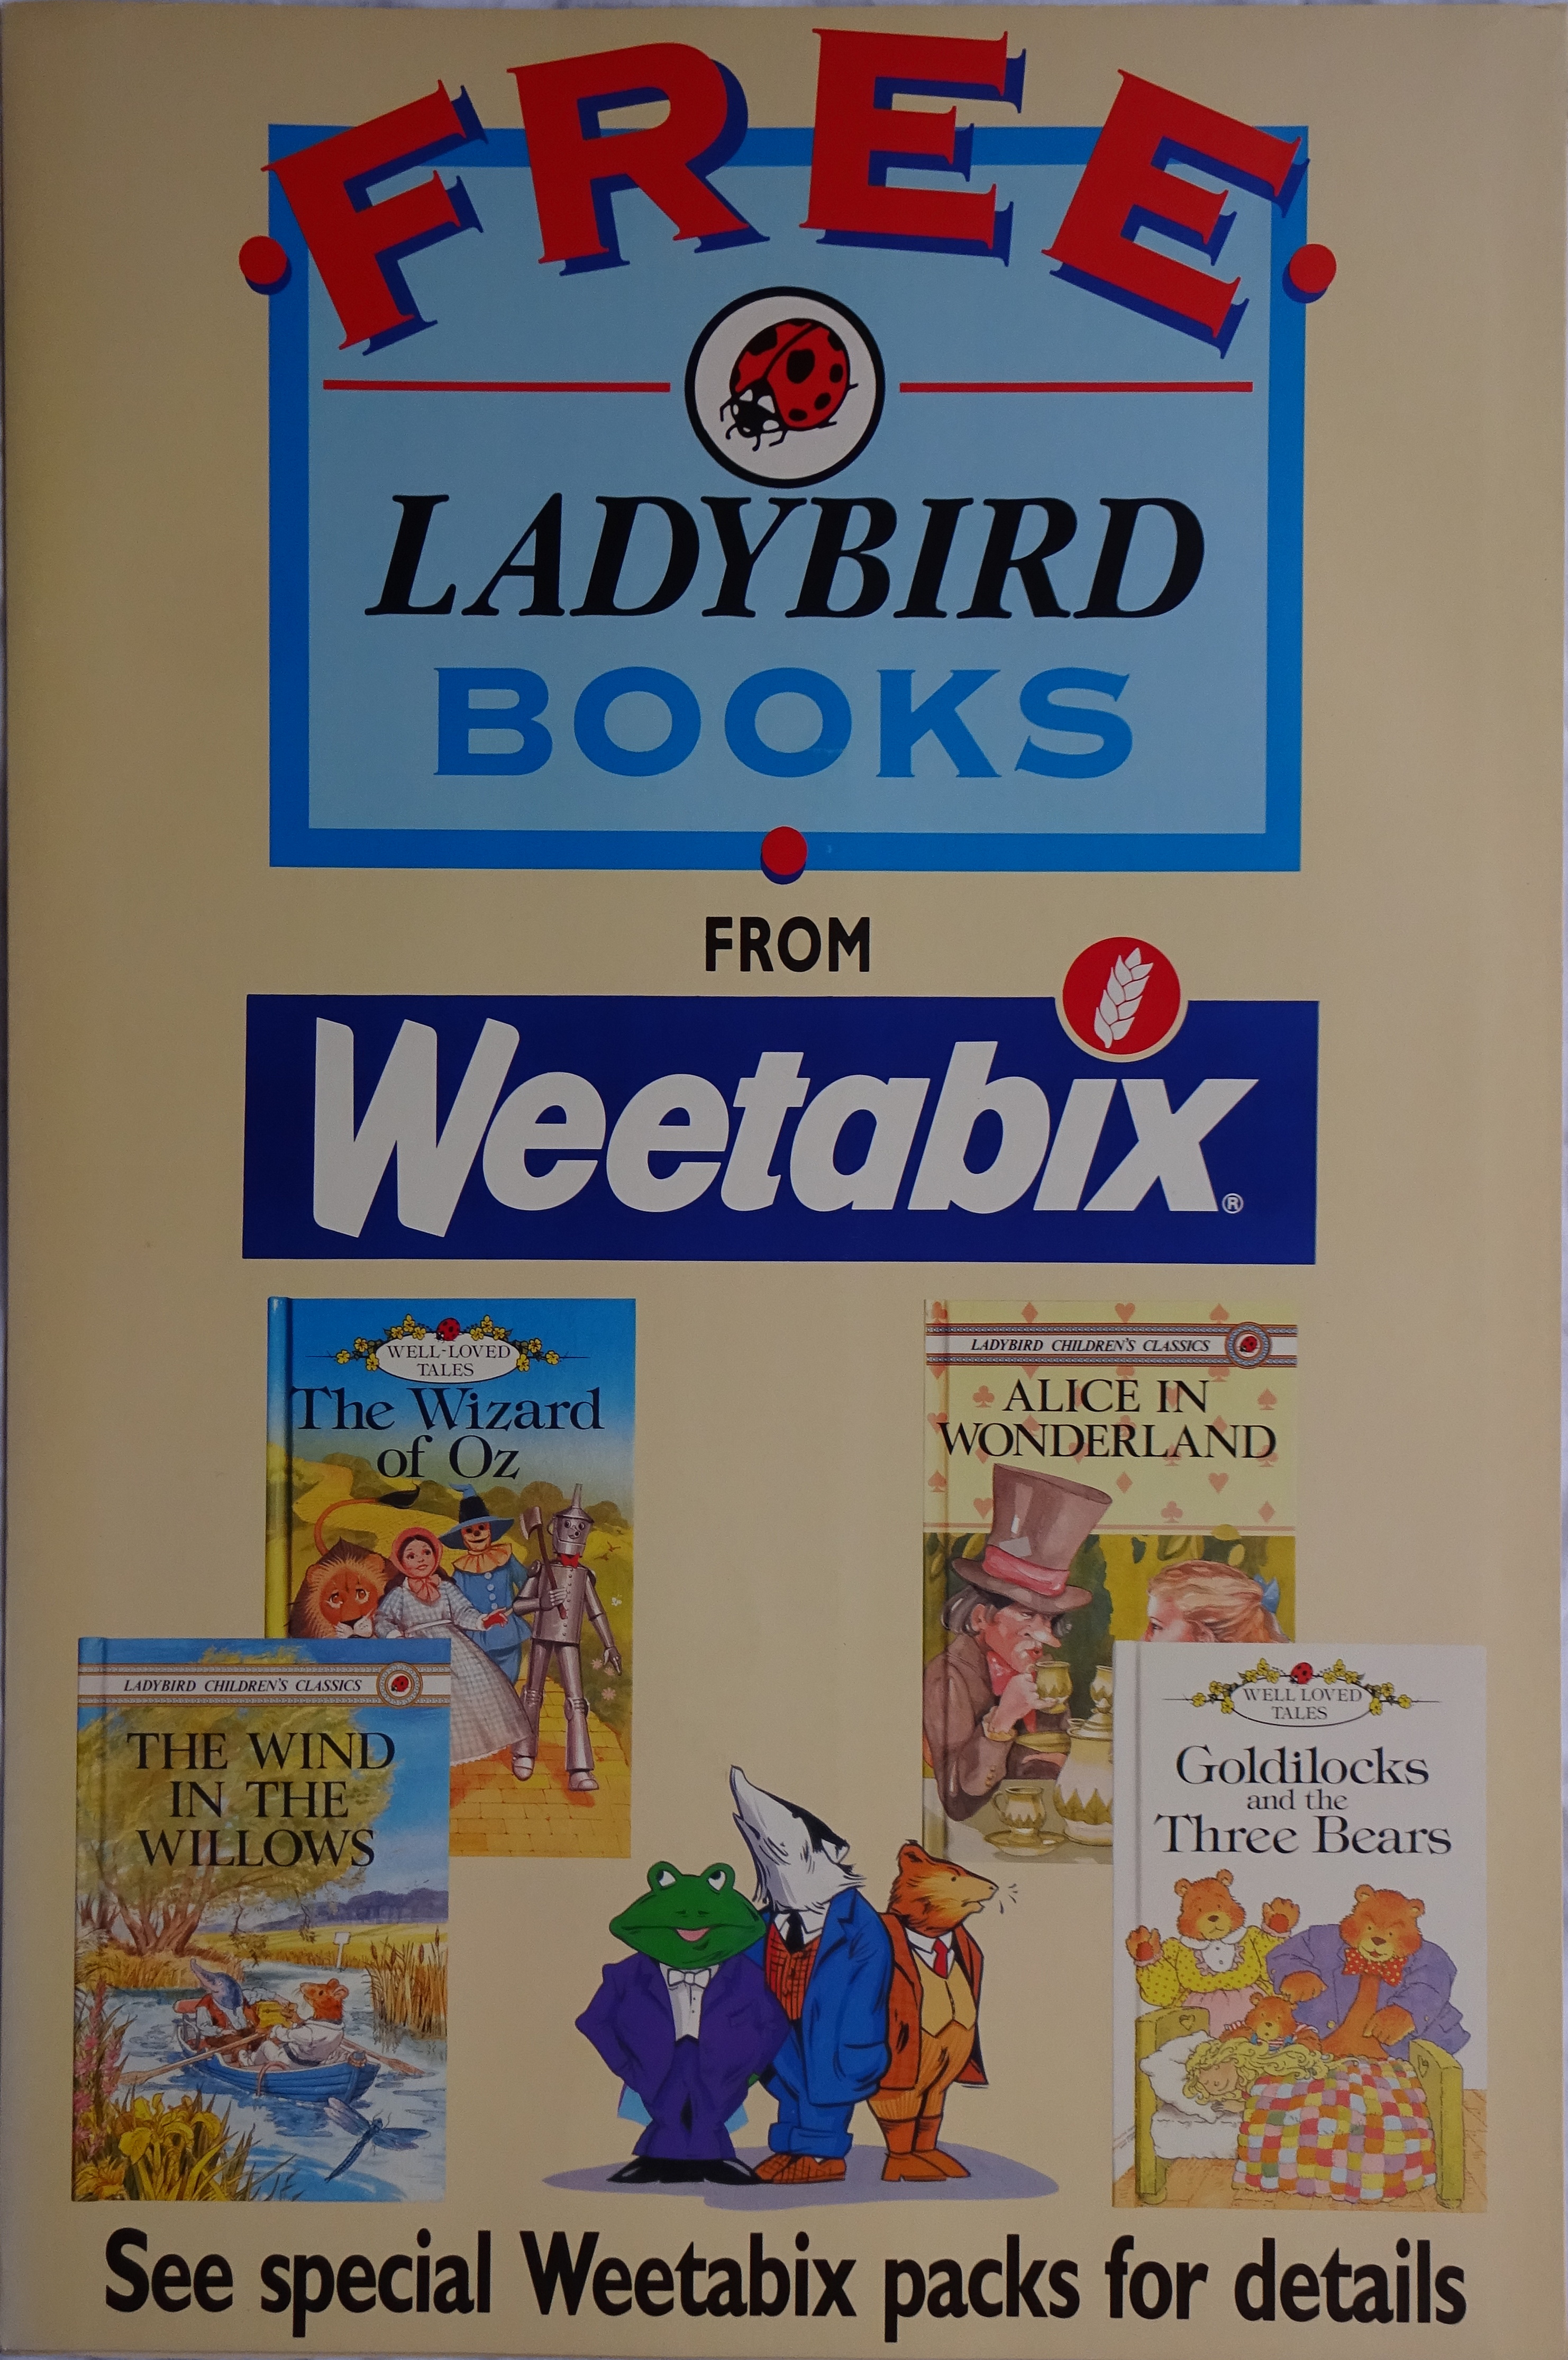 1990 Weetabix Ladybird Book Shop Poster